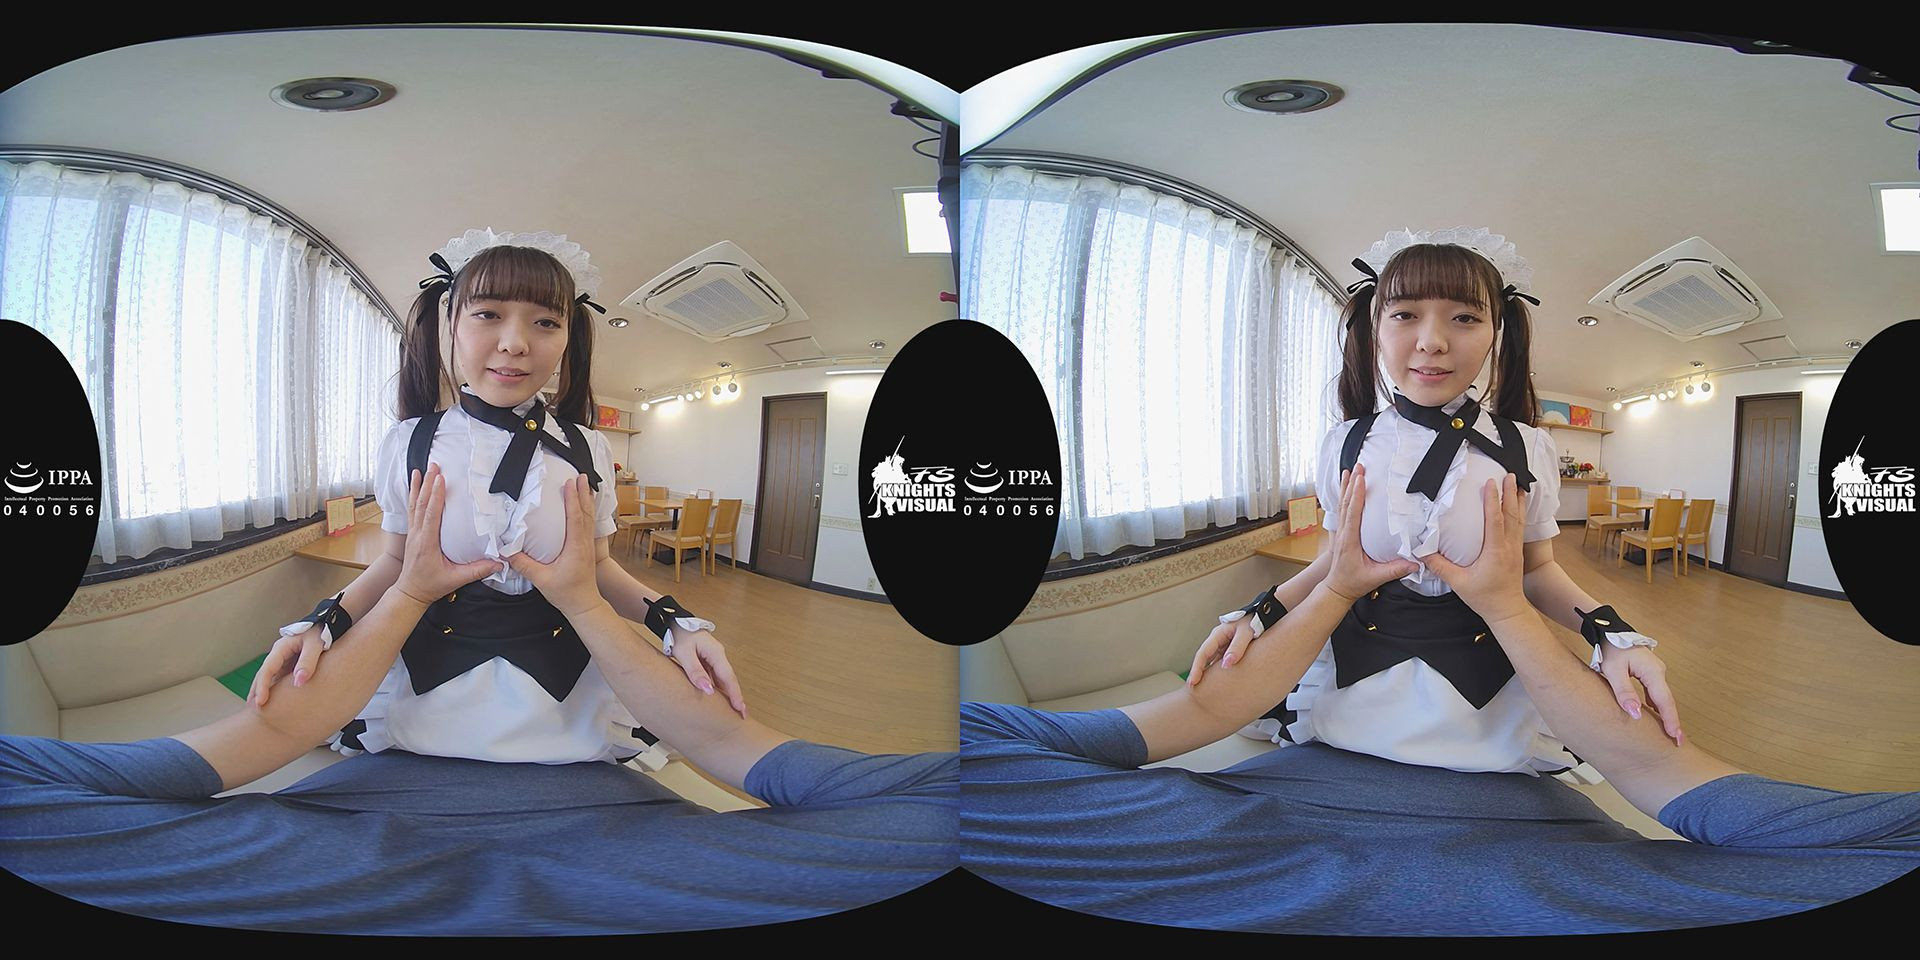 3D VR Erotic Massage & Restaurant 12; Japanese Maid Cafe VR Porn Slideshow